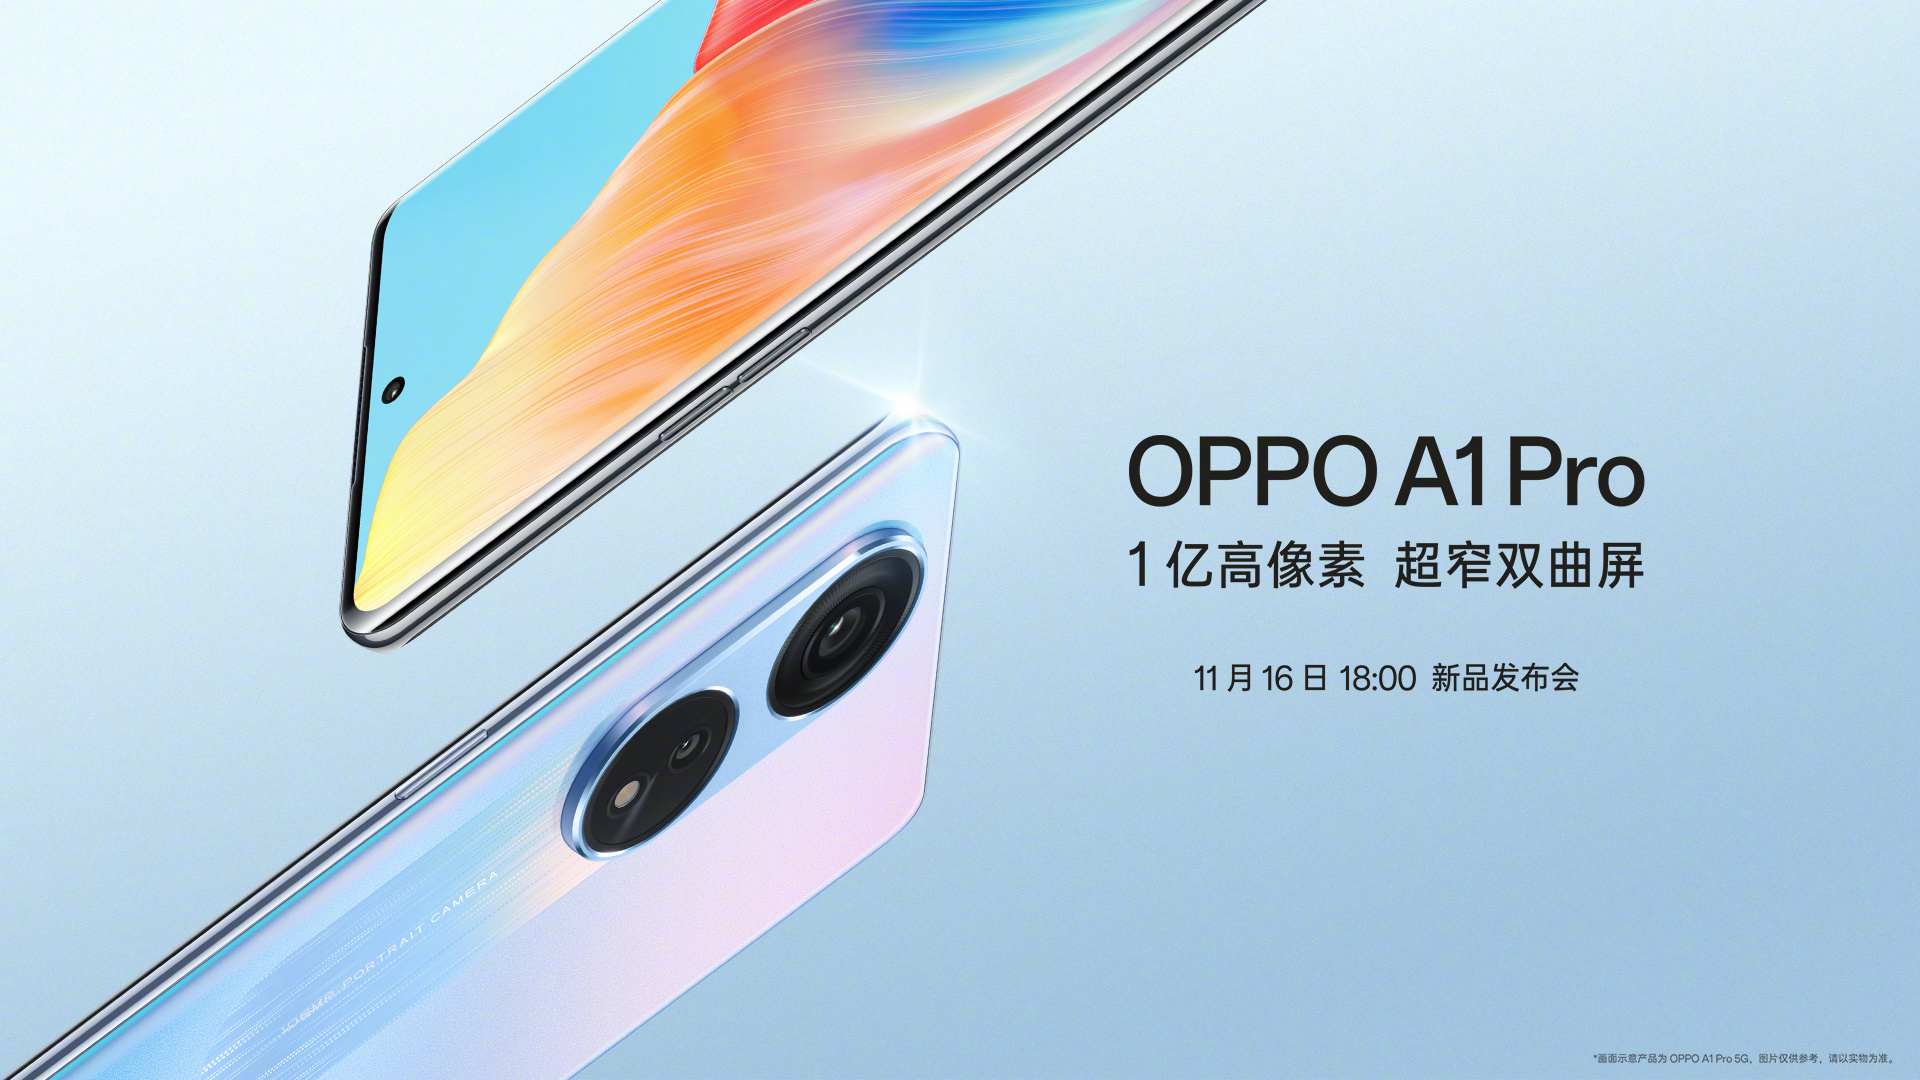 L'OPPO A1 Pro, dotée d'un écran AMOLED à 120 Hz, d'une puce Snapdragon 695 et d'un appareil photo de 108 MP, sera présentée le 16 novembre.